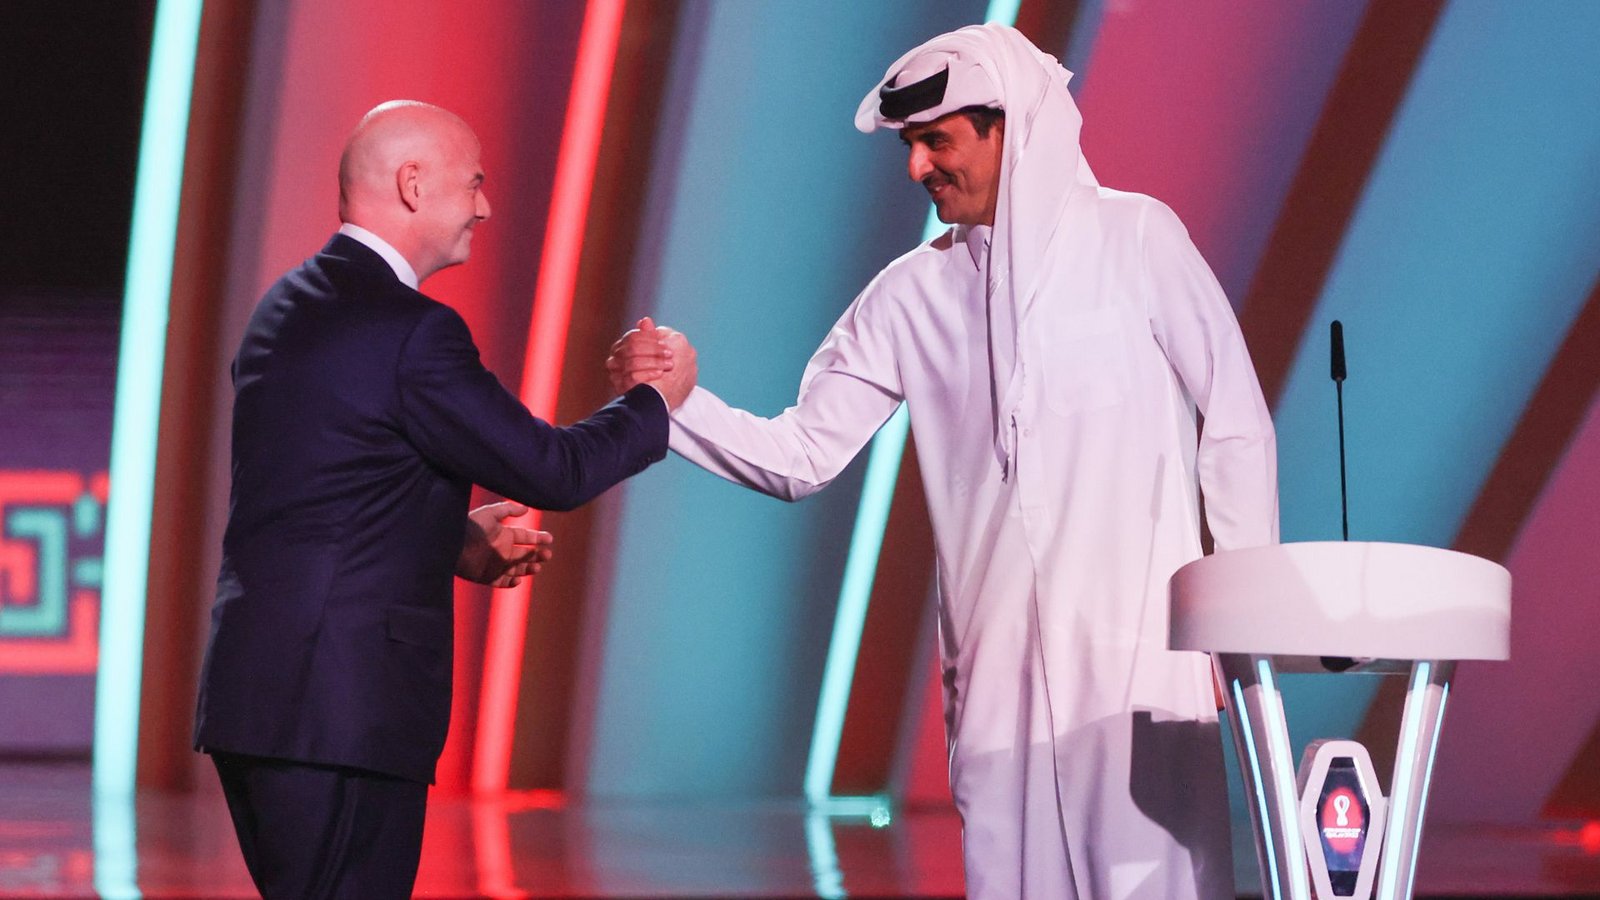 Fifa-Präsident Gianni Infantino (li.) mit Scheich Tamim bin Hamad Al Thani, dem Emir von Katar, zu Beginn der Auslosung.Foto: dpa/Christian Charisius